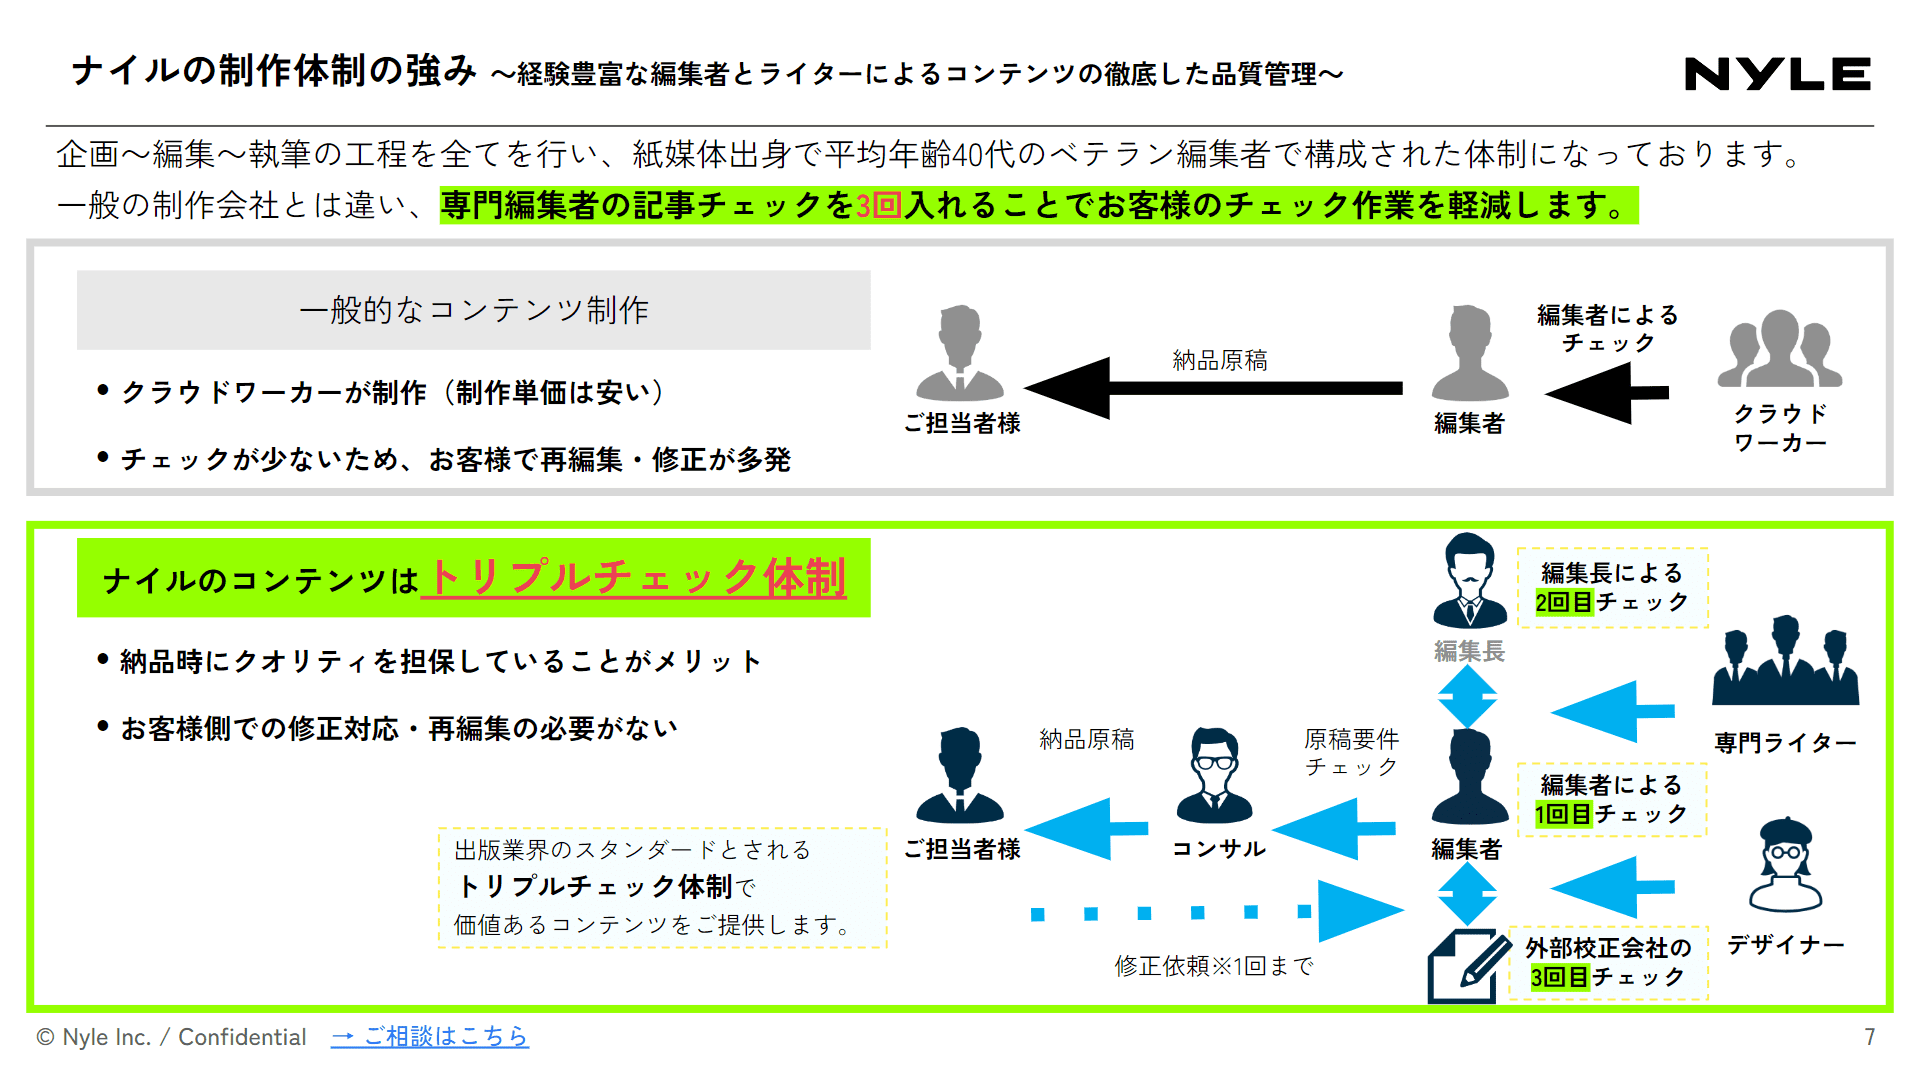 ホワイトペーパー作成代行サービス紹介資料スライドサンプル1